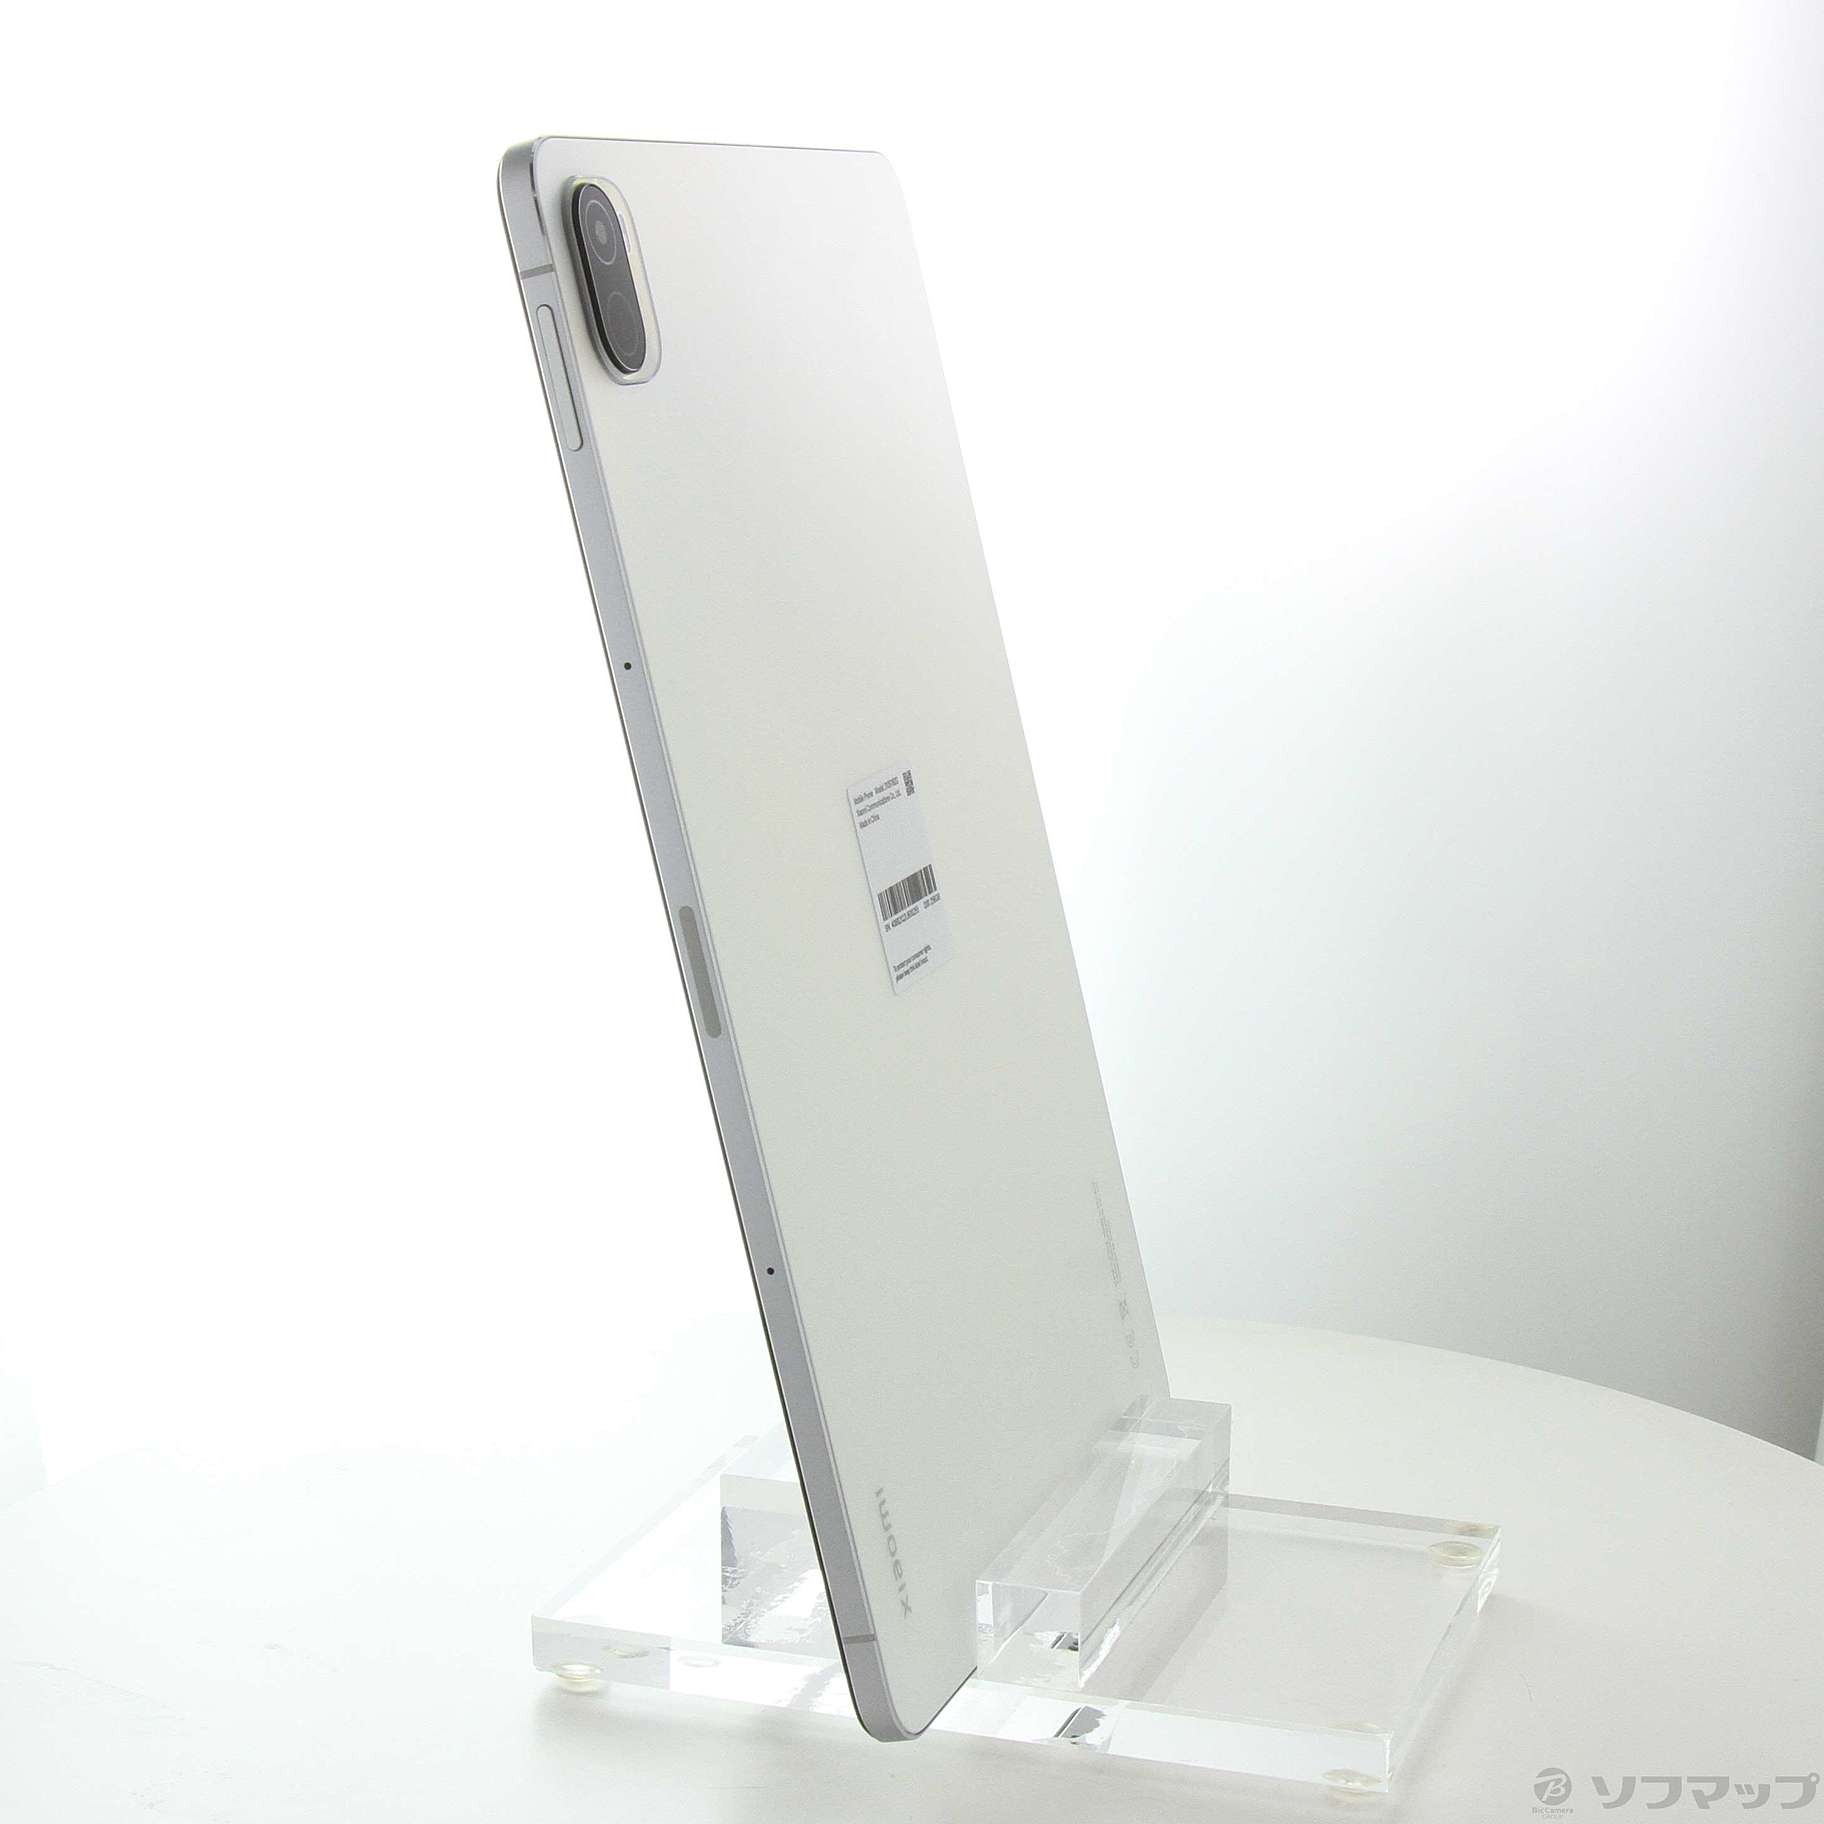 シャオミ Xiaomi Pad 5 256GB パールホワイト